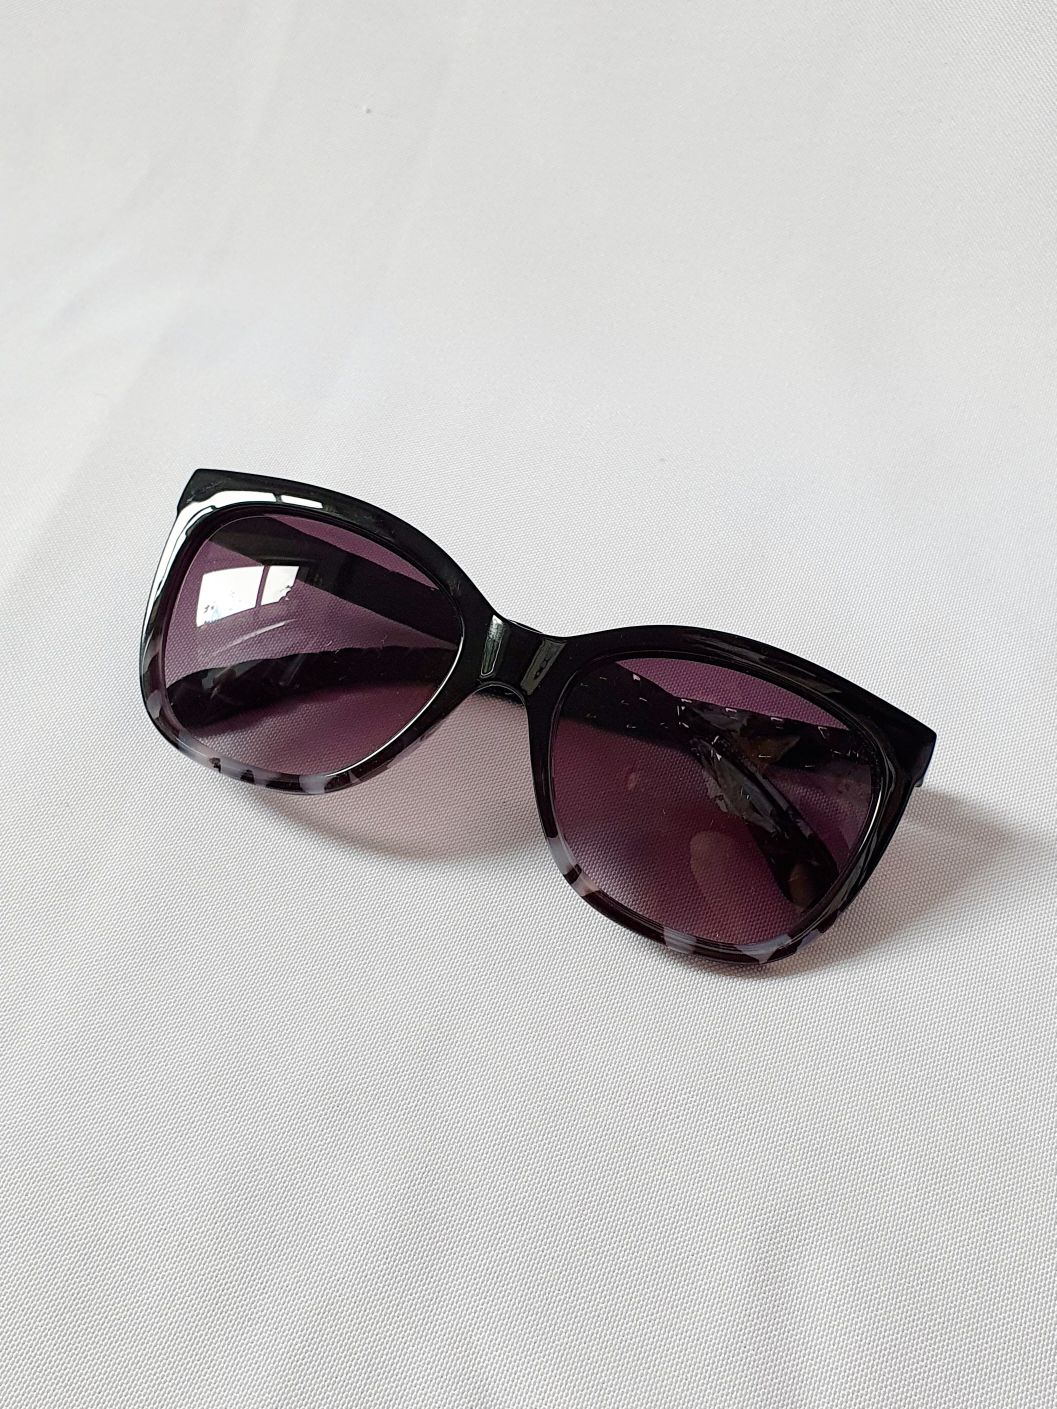 Vintage Sunglasses 27